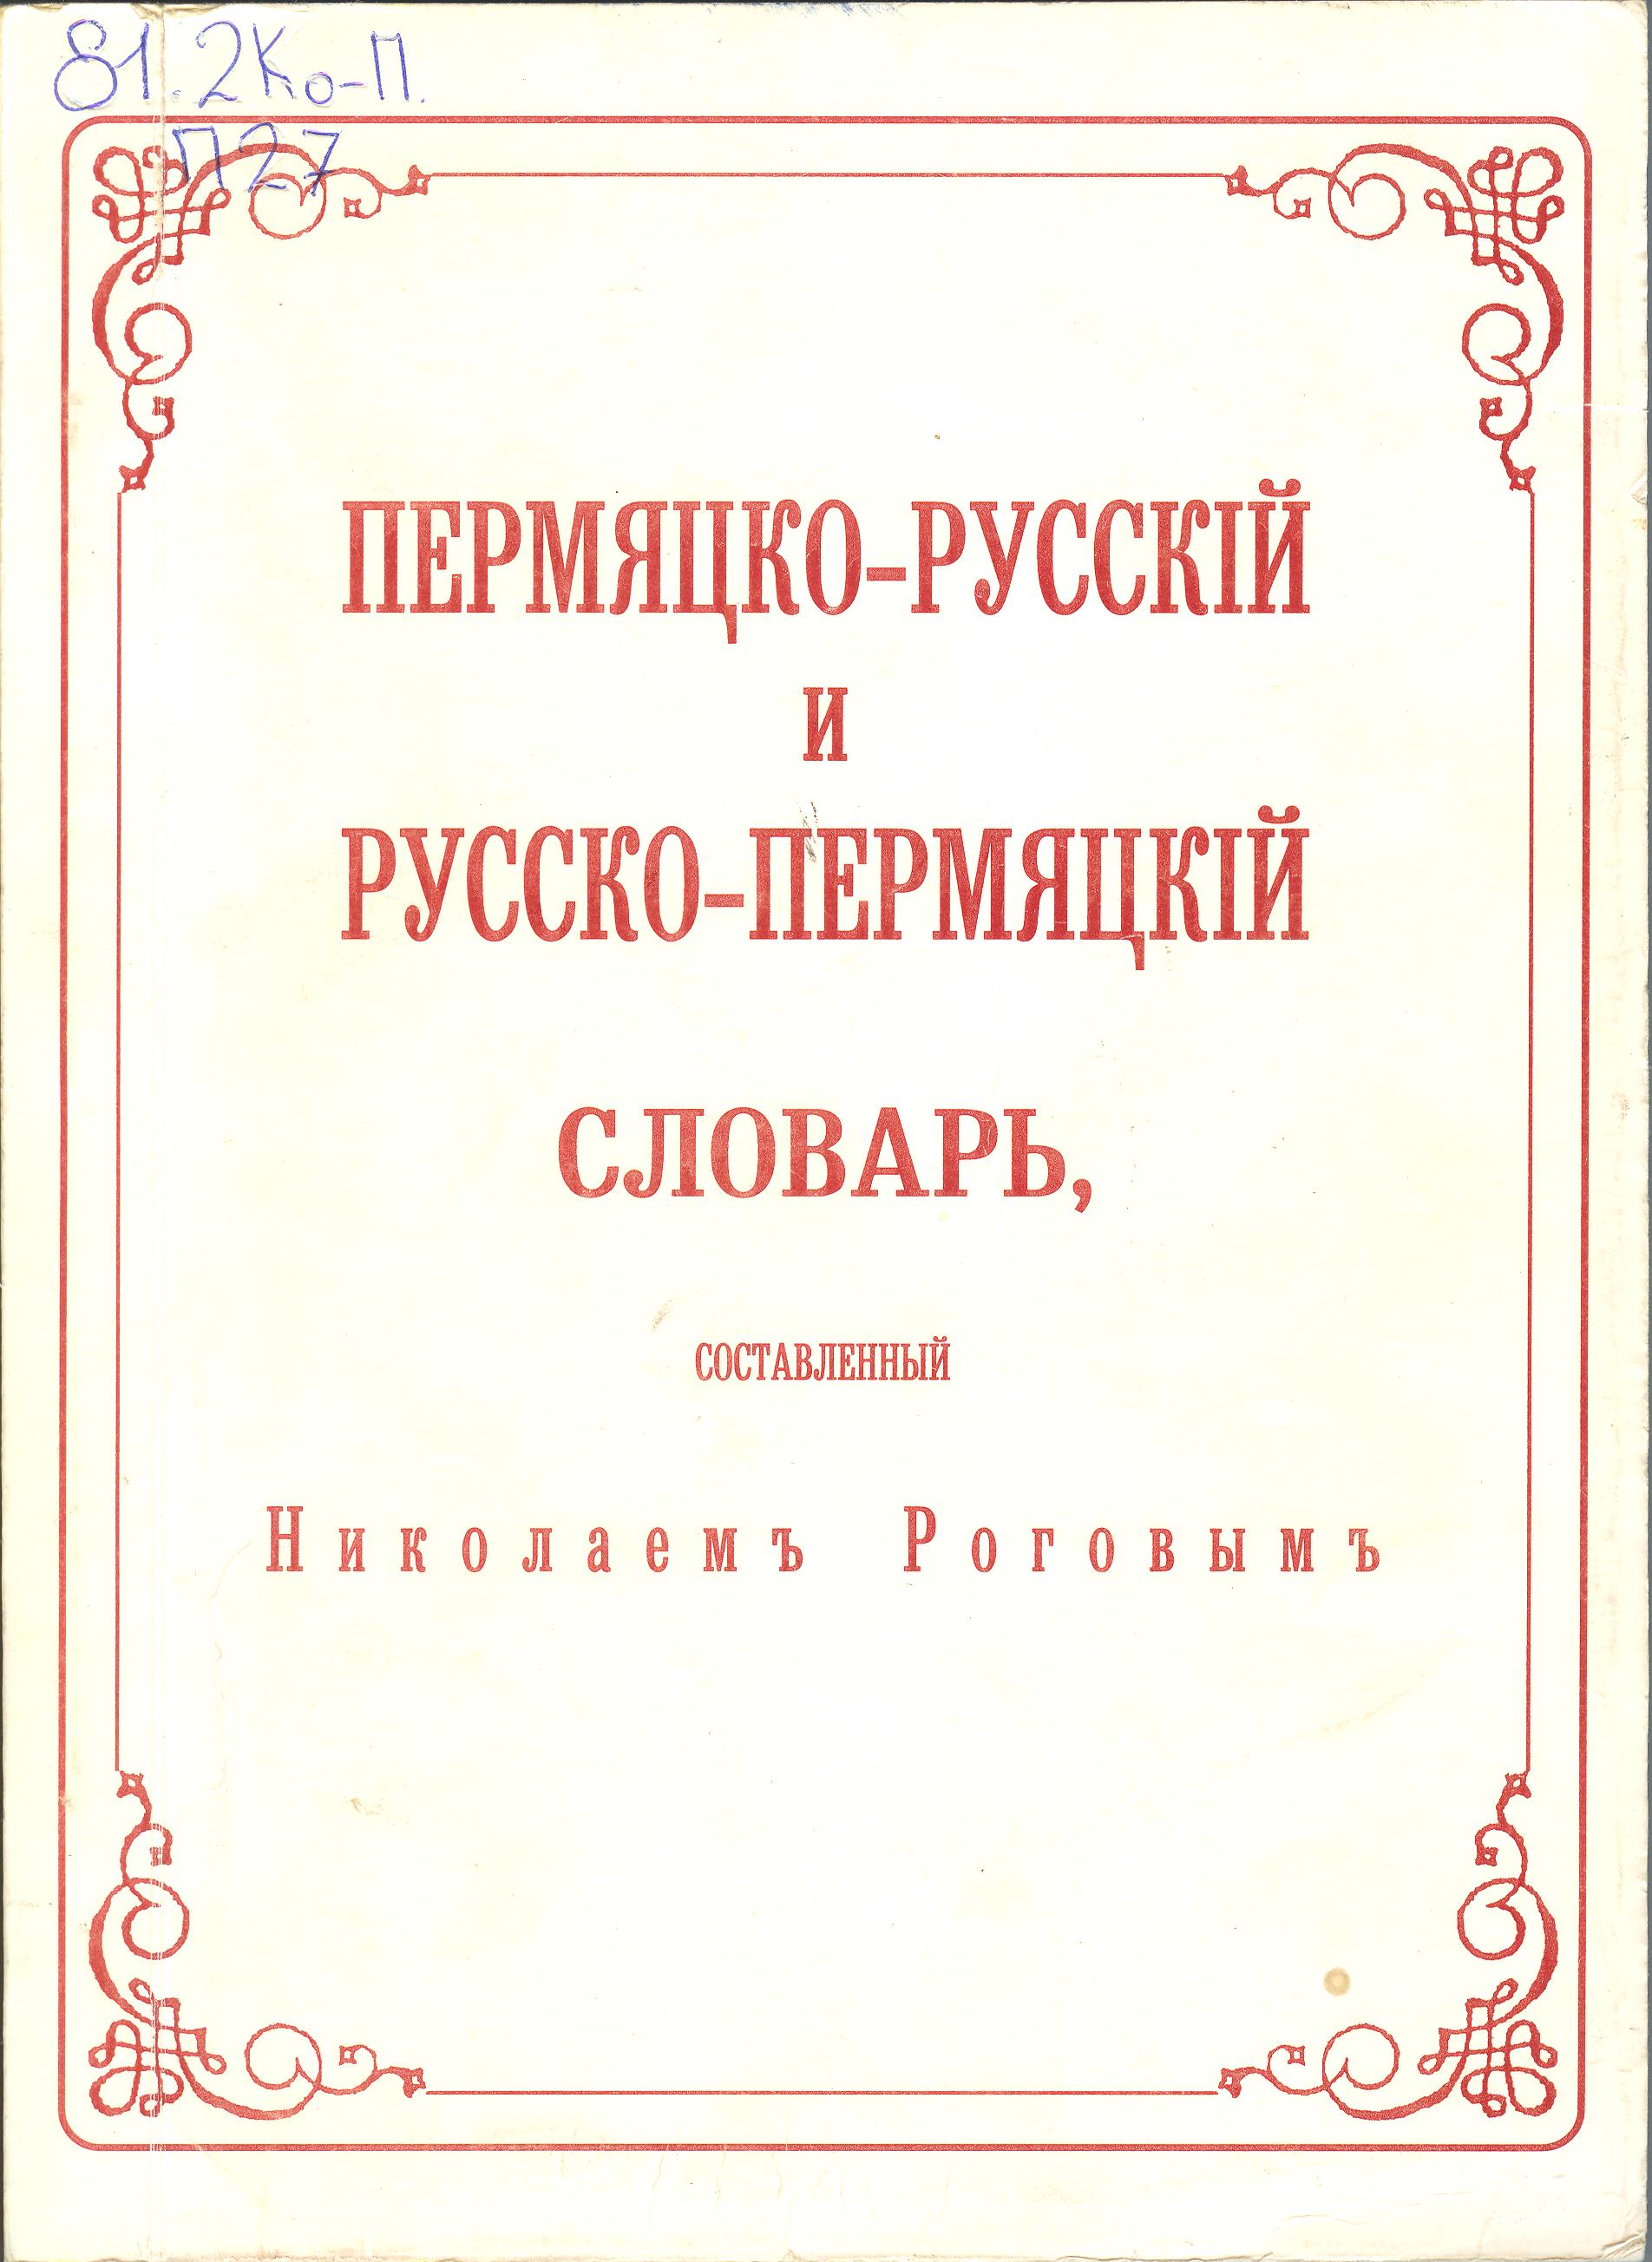 Пермяцко-русский словарь Н. Рогова